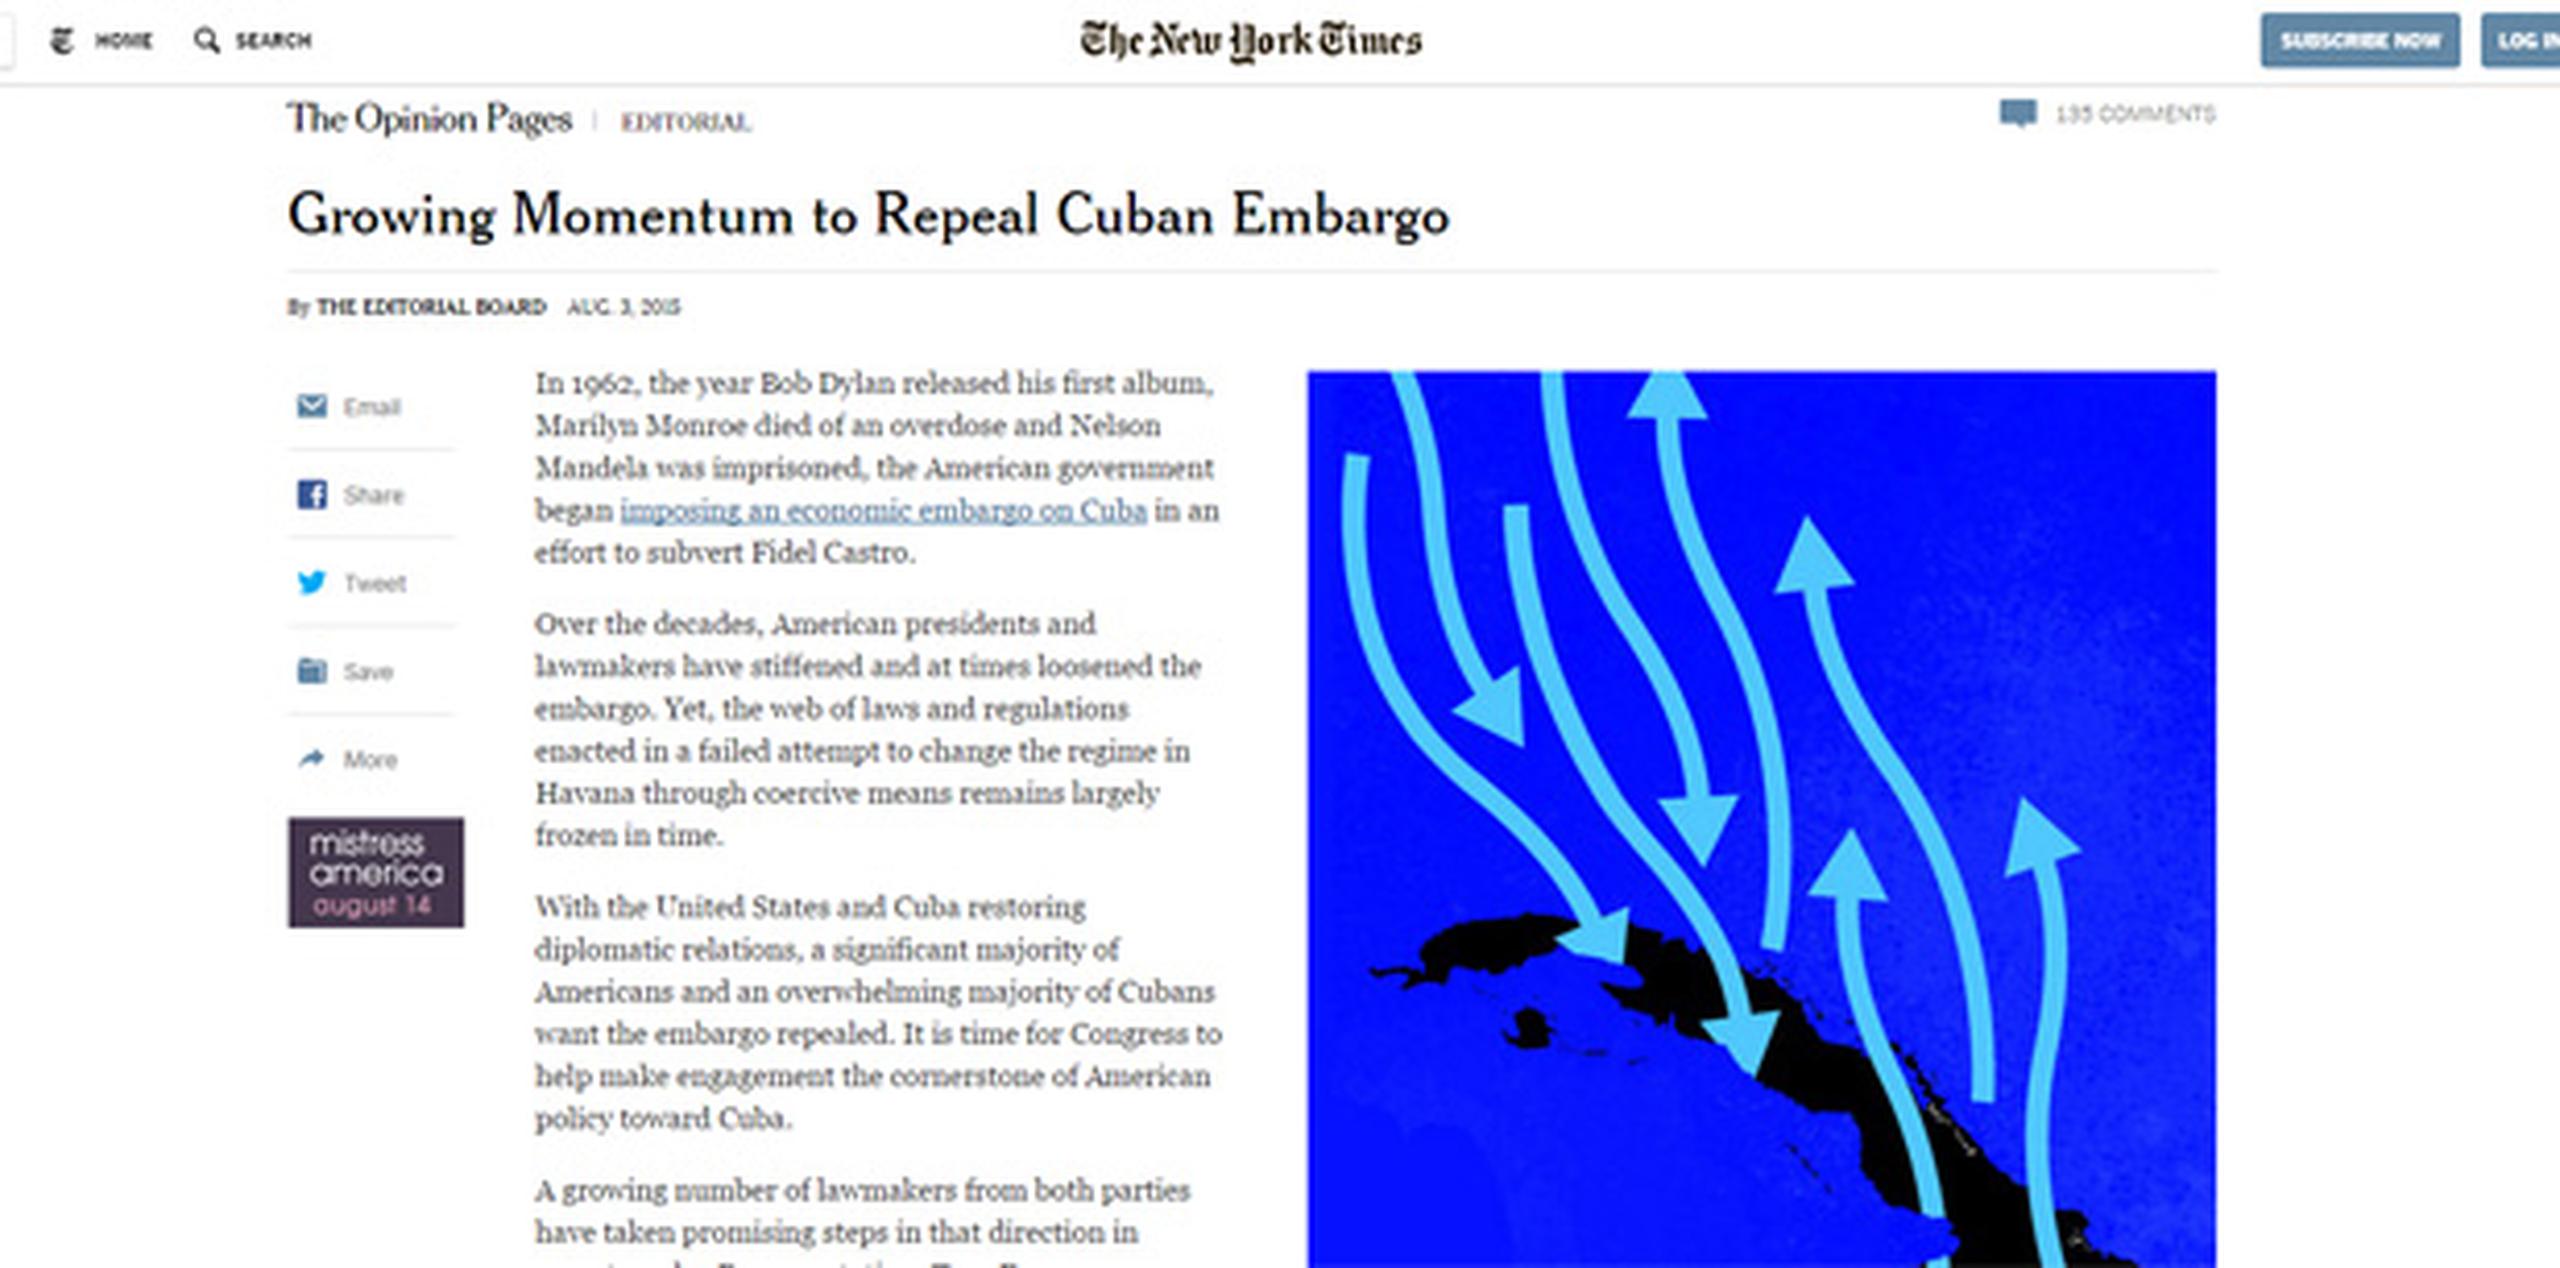 El periódico recuerda el "fuerte" llamamiento a poner fin al embargo que hizo la semana pasada desde Miami la candidata demócrata Hillary Clinton, quien dijo que los cubanos "quieren cada vez más contacto con Estados Unidos".